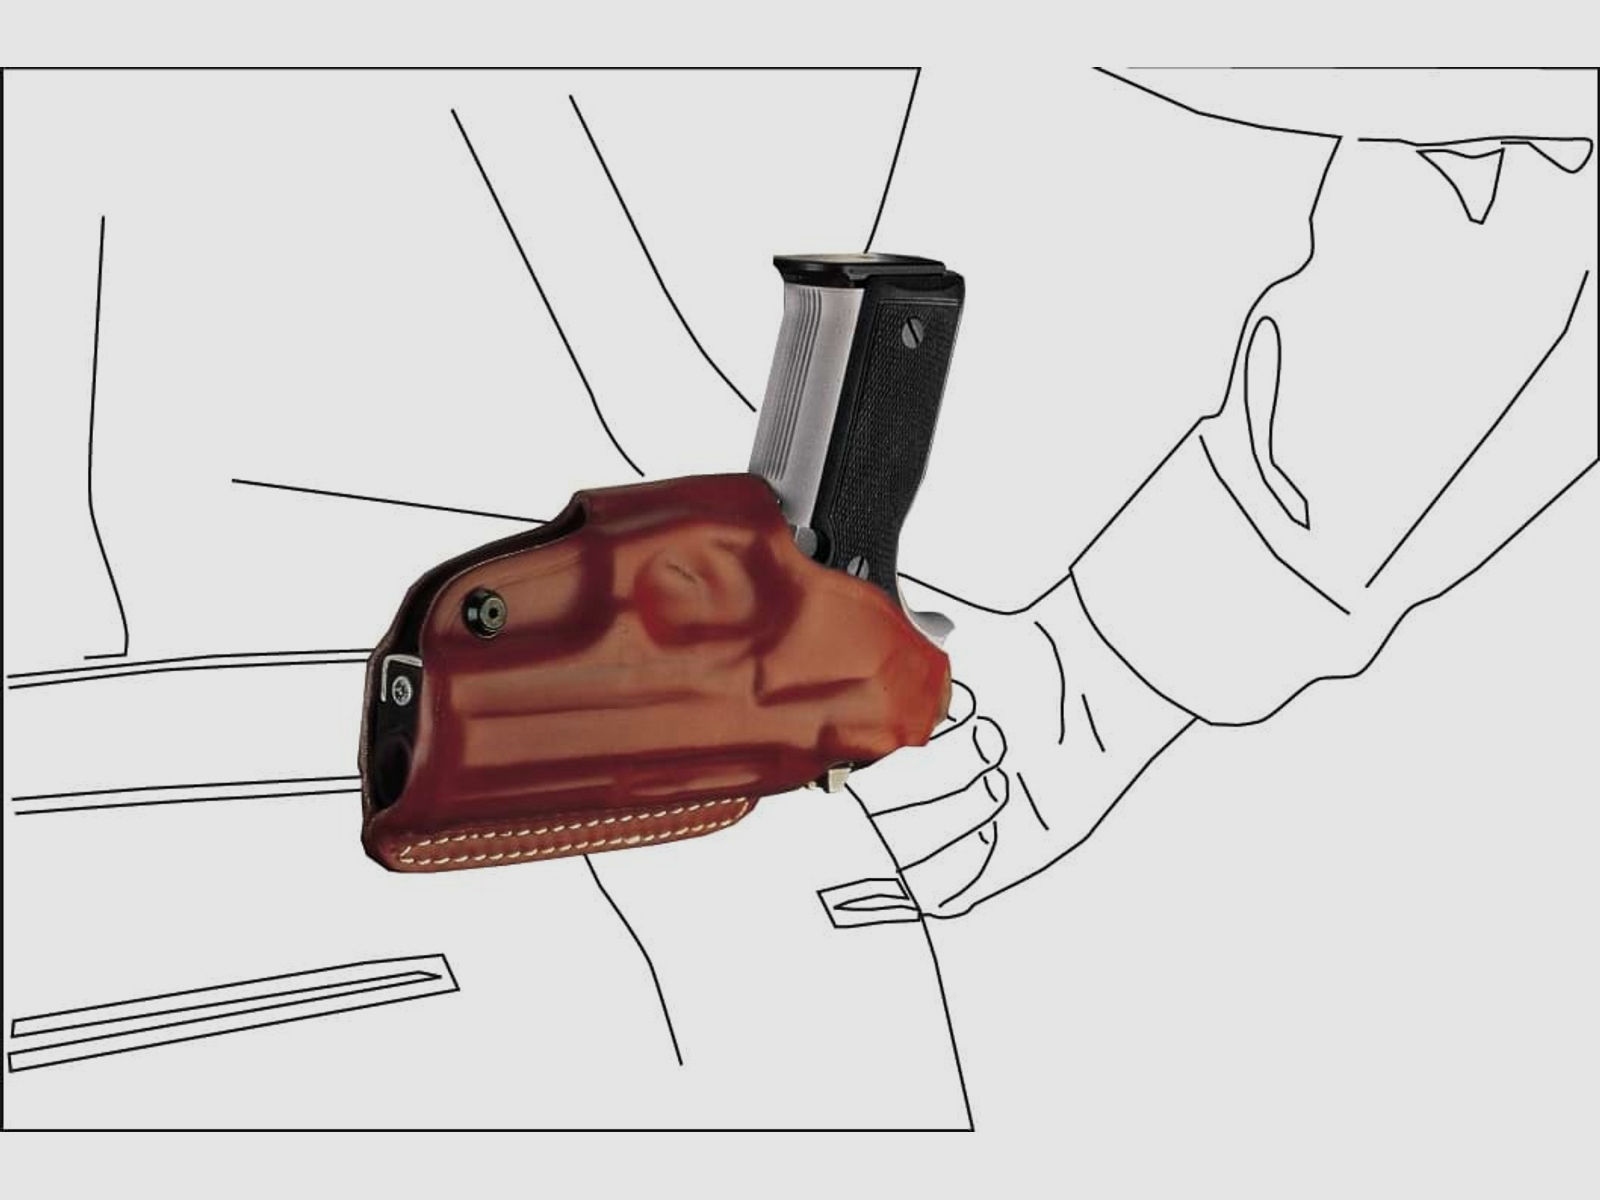 Schnellziehholster mit drei Tragepositionen Glock 43/43X/48, Walther P22/P22Q-Braun-Rechtshänder